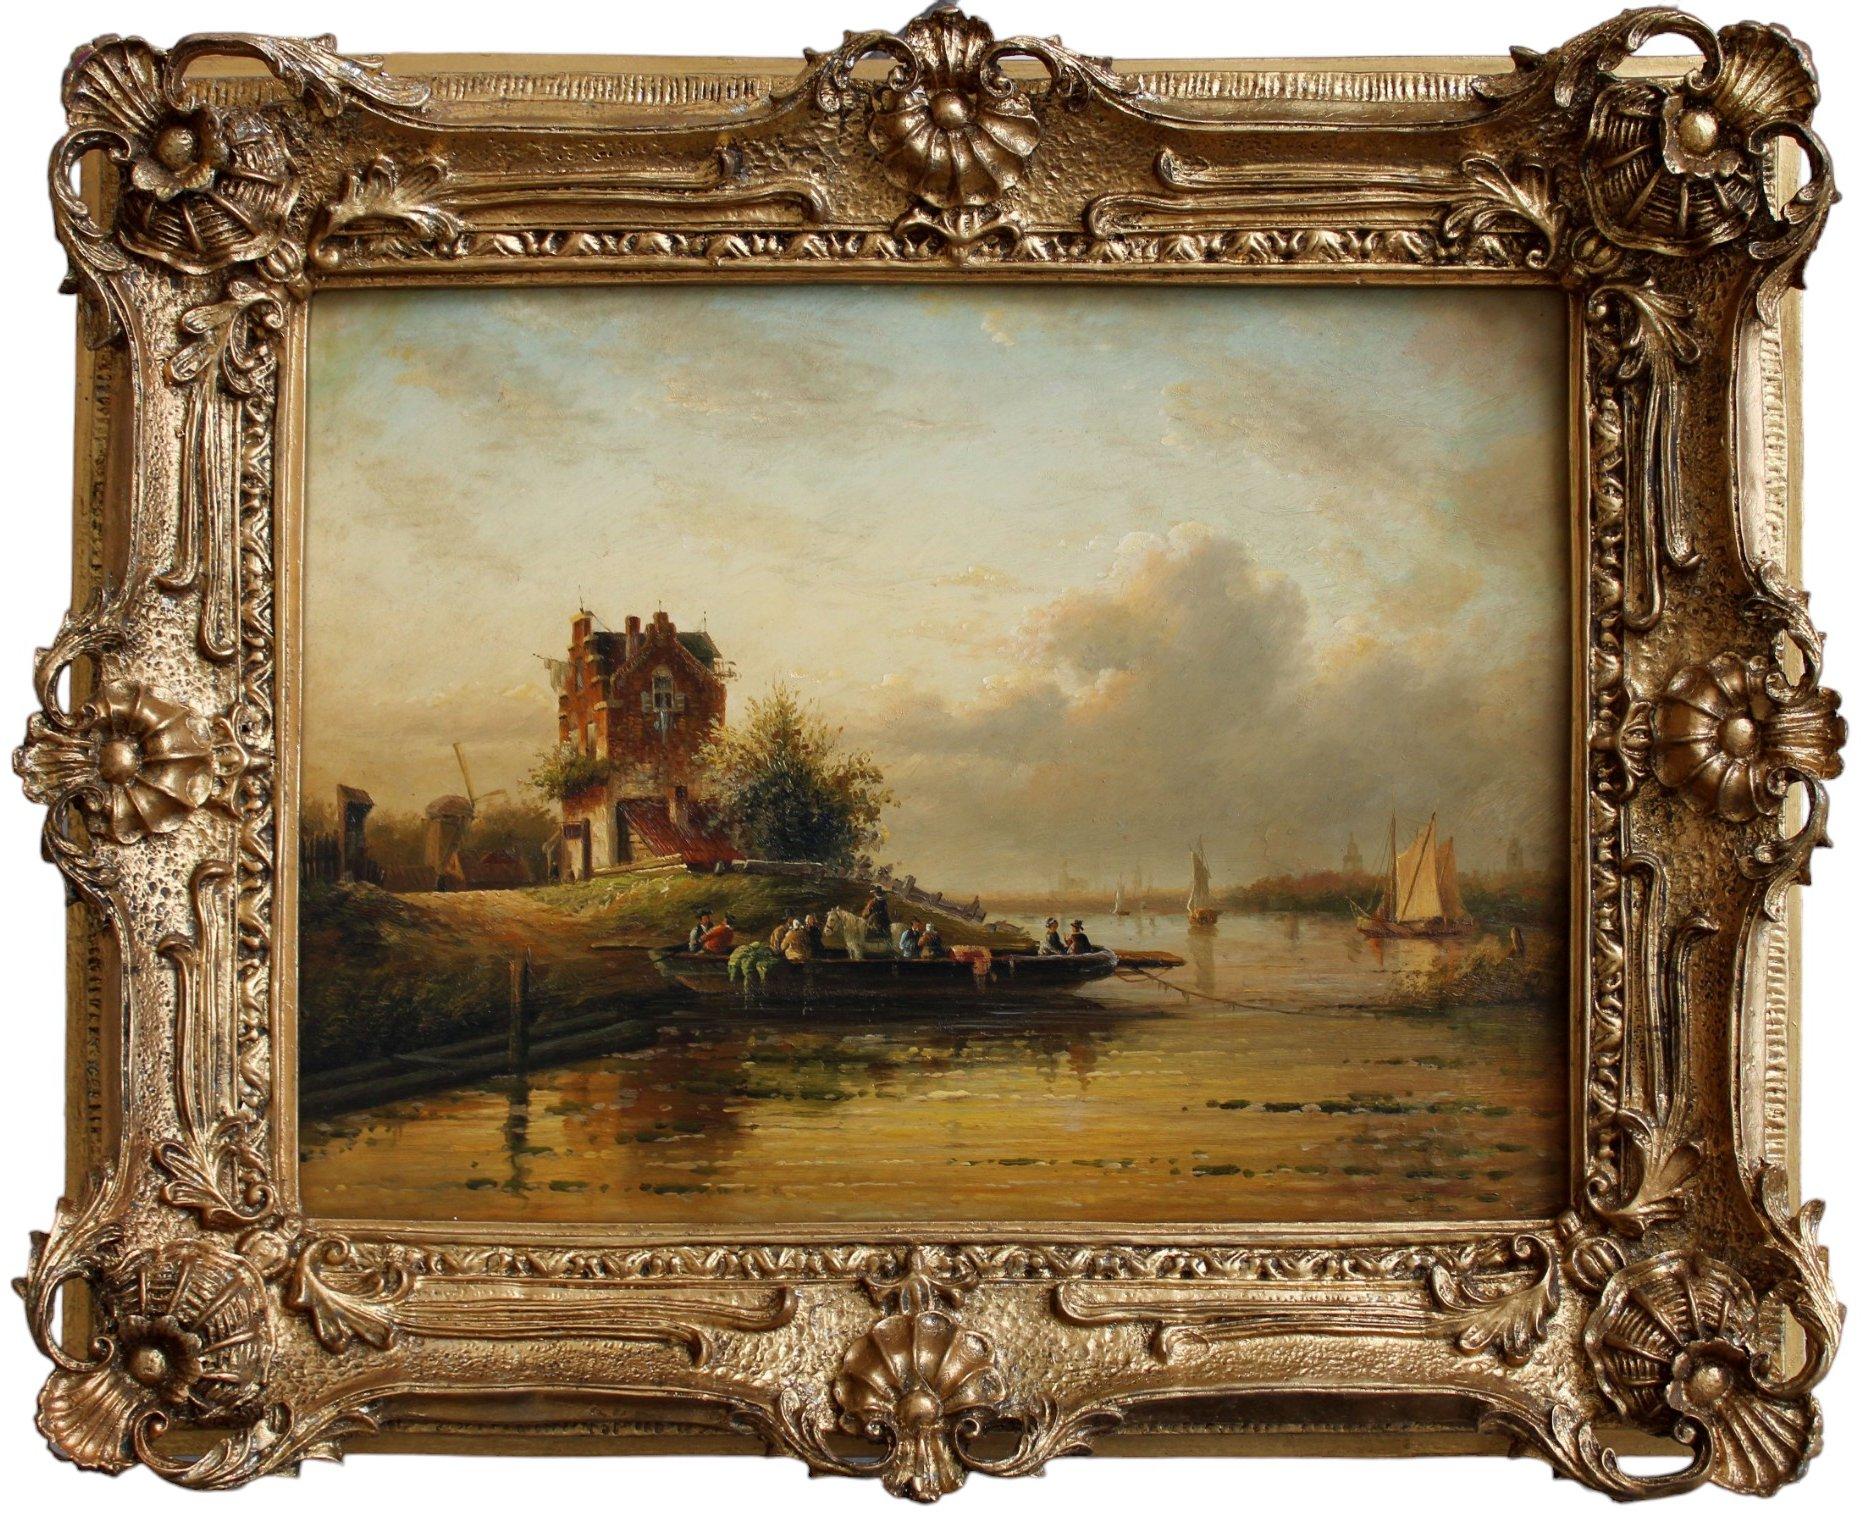 Abendlandschaft am Fluss. Holz, Öl, 29x39 cm, Holz (Realismus), Painting, von Dommersen, William Raymond